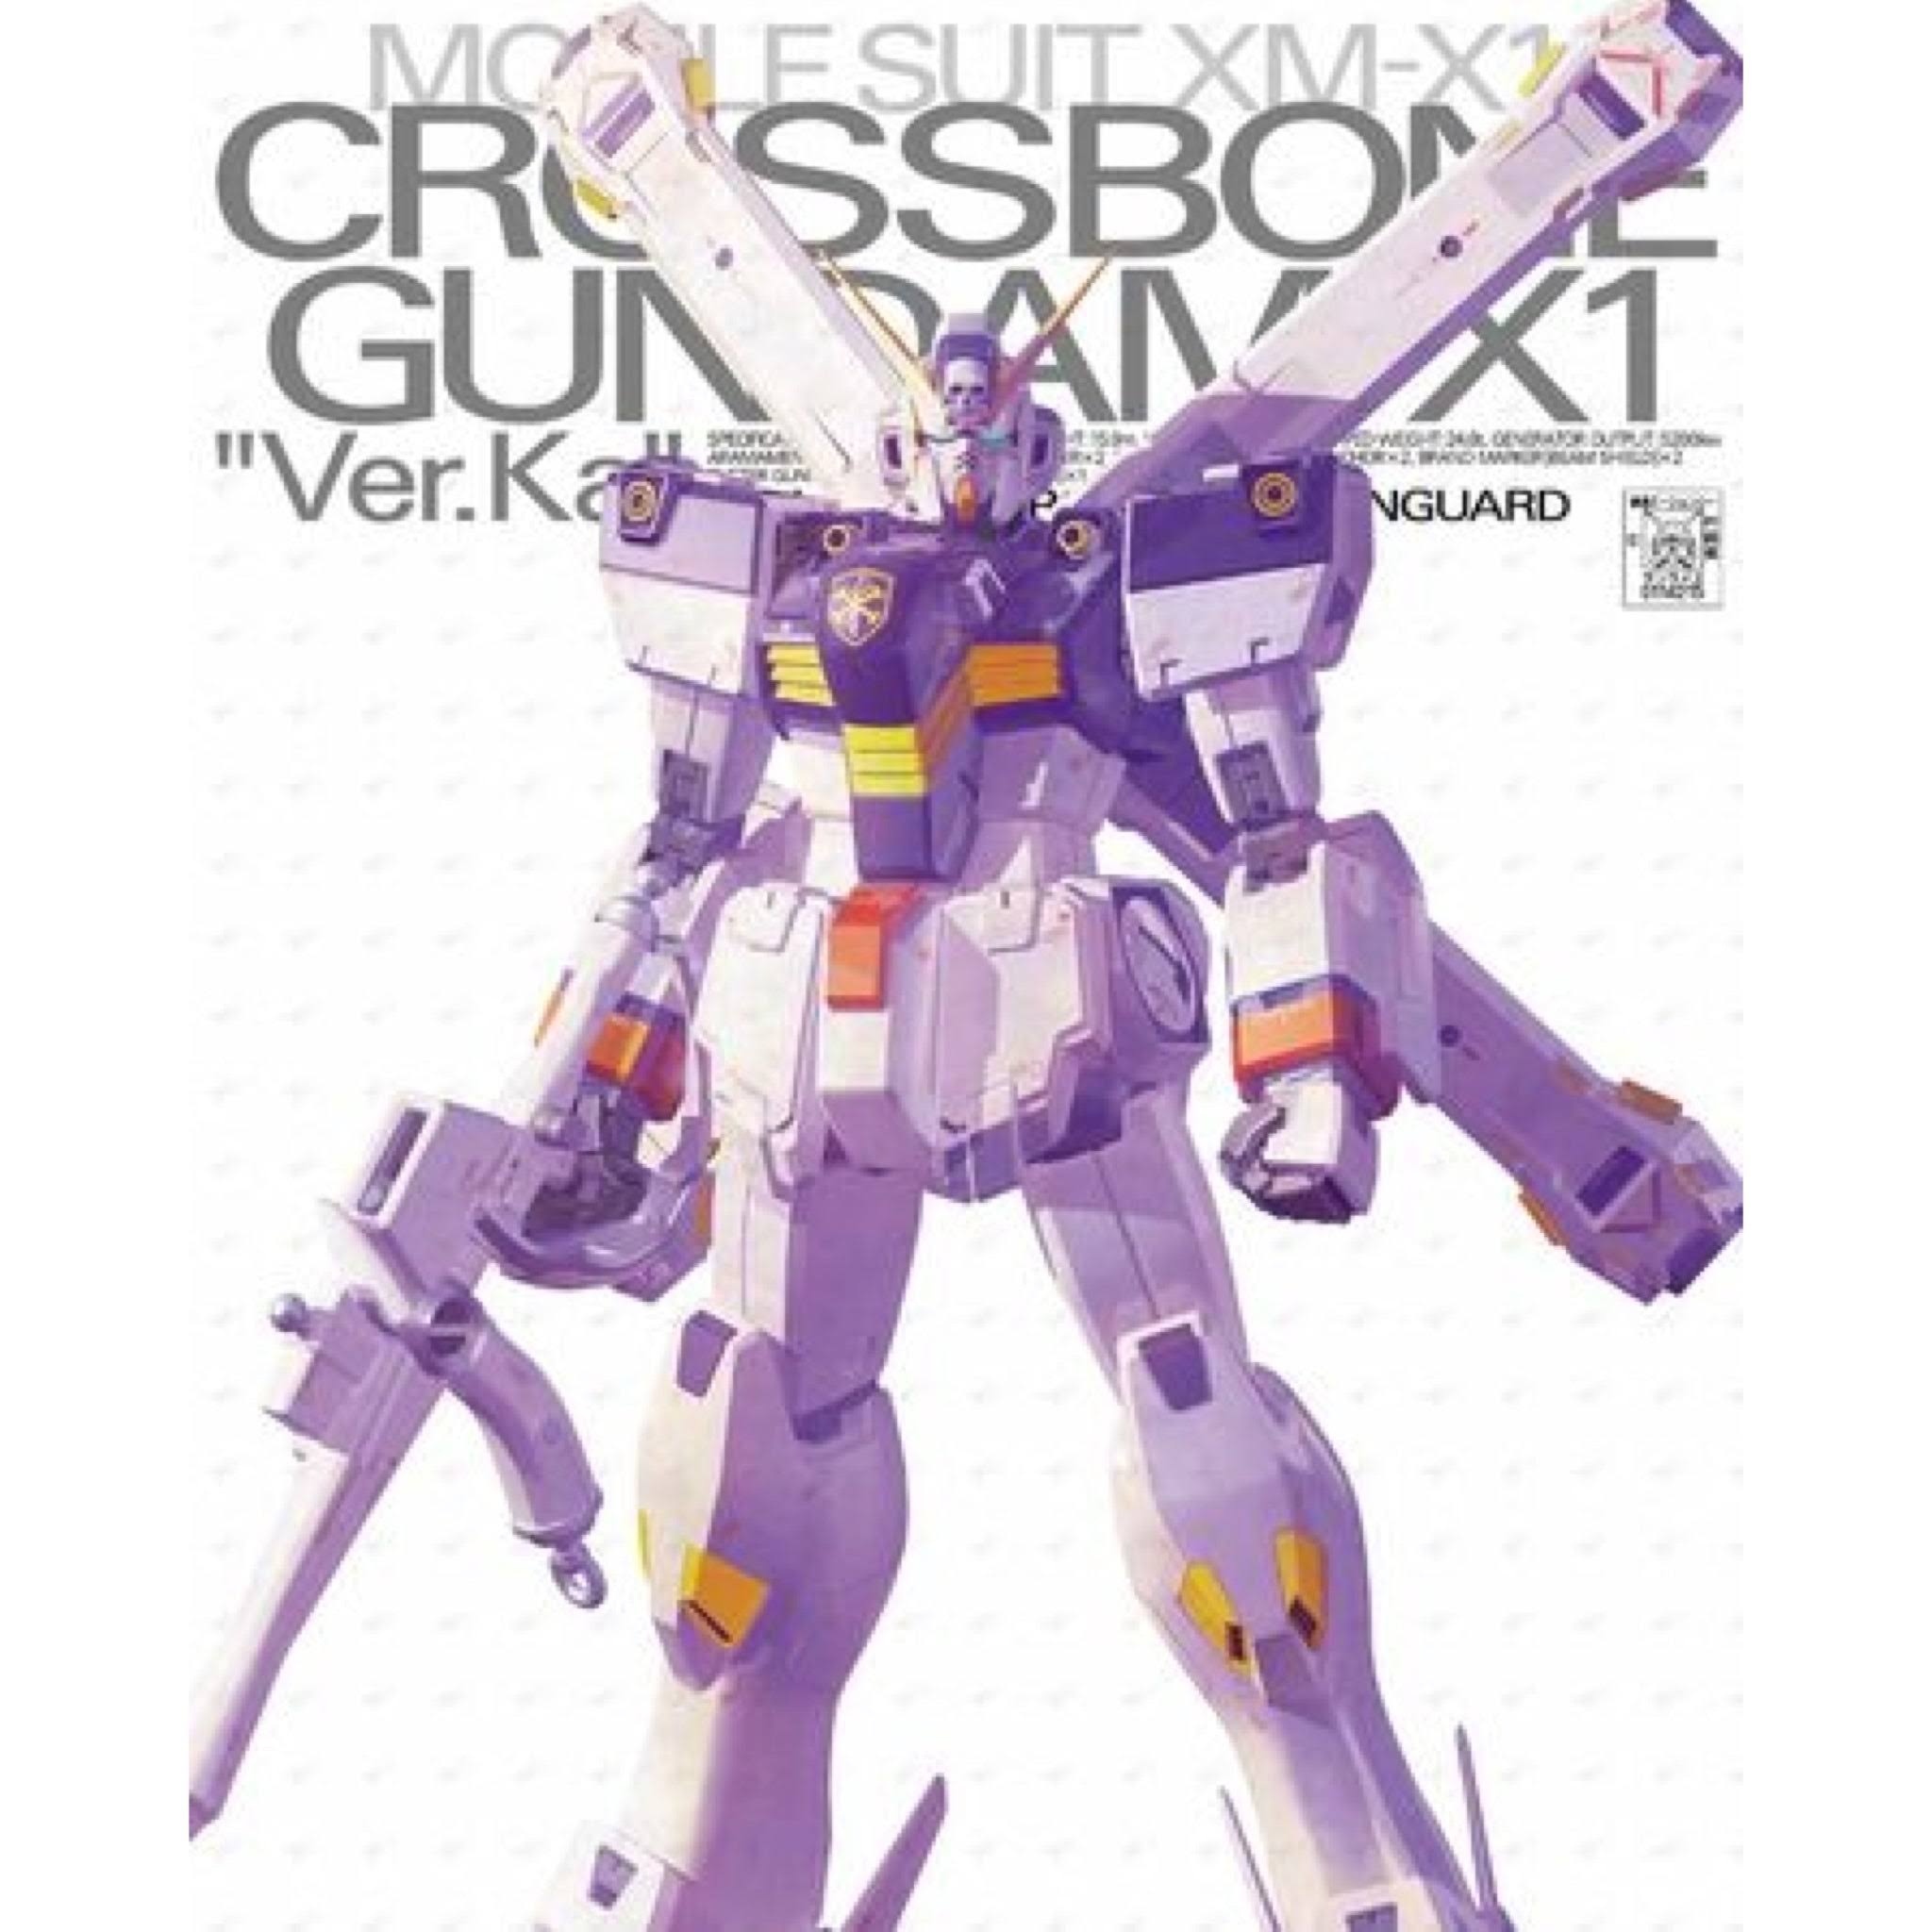 MG Crossbone Gundam X1 Ver. Ka